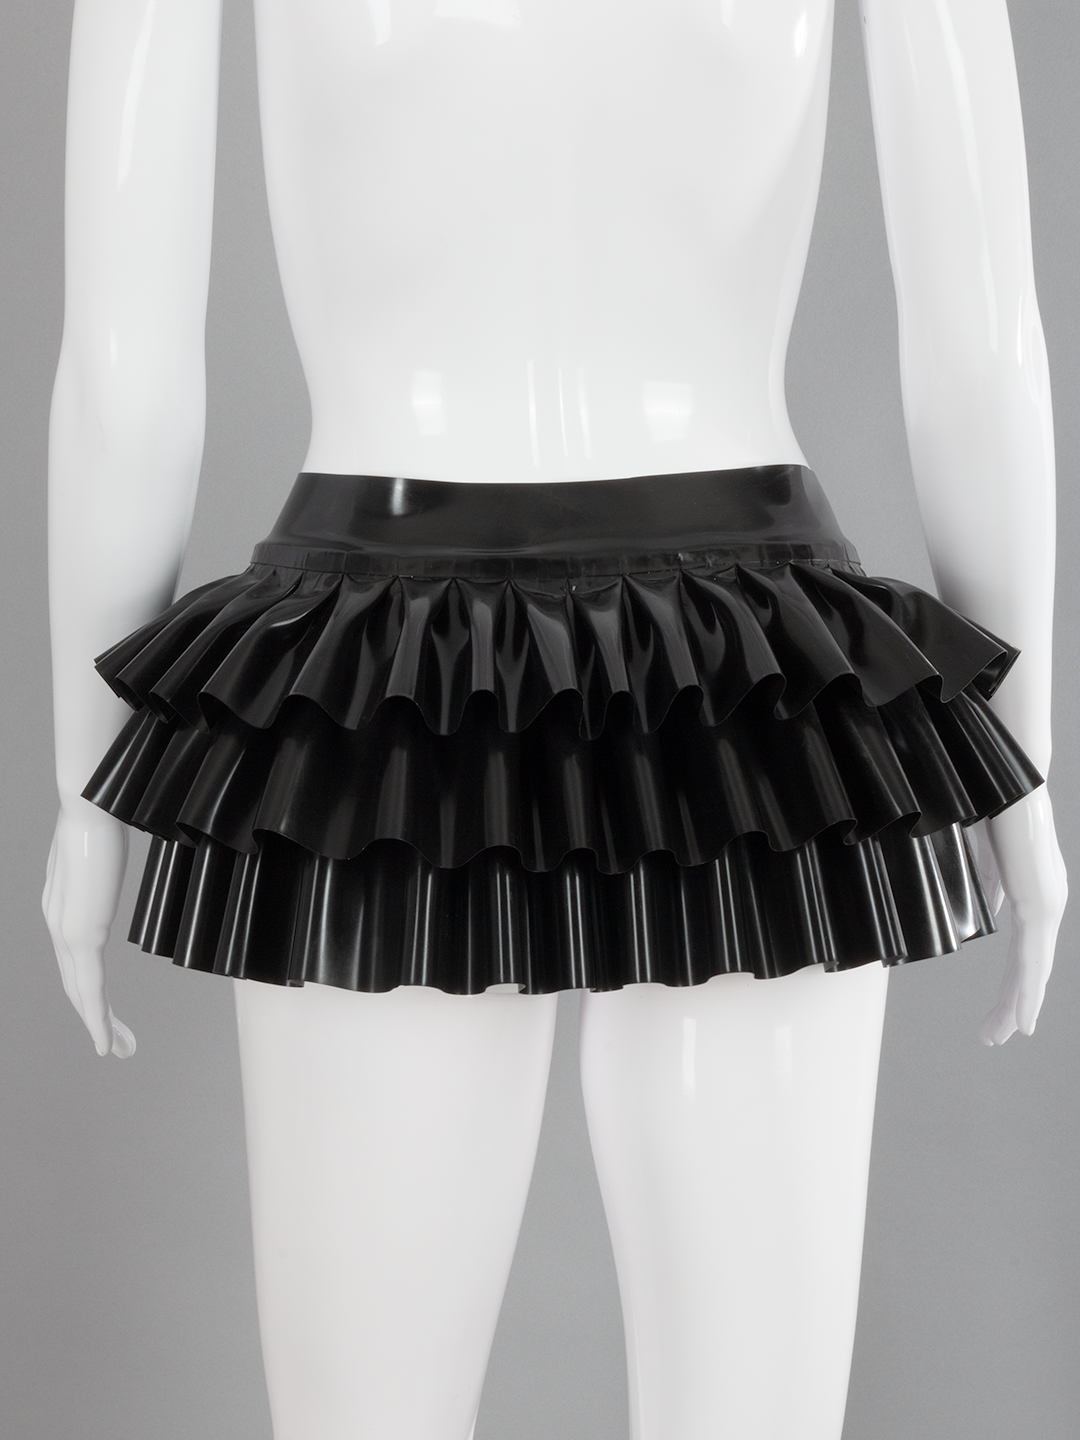 Deadly Fetish Latex: Skirt #15